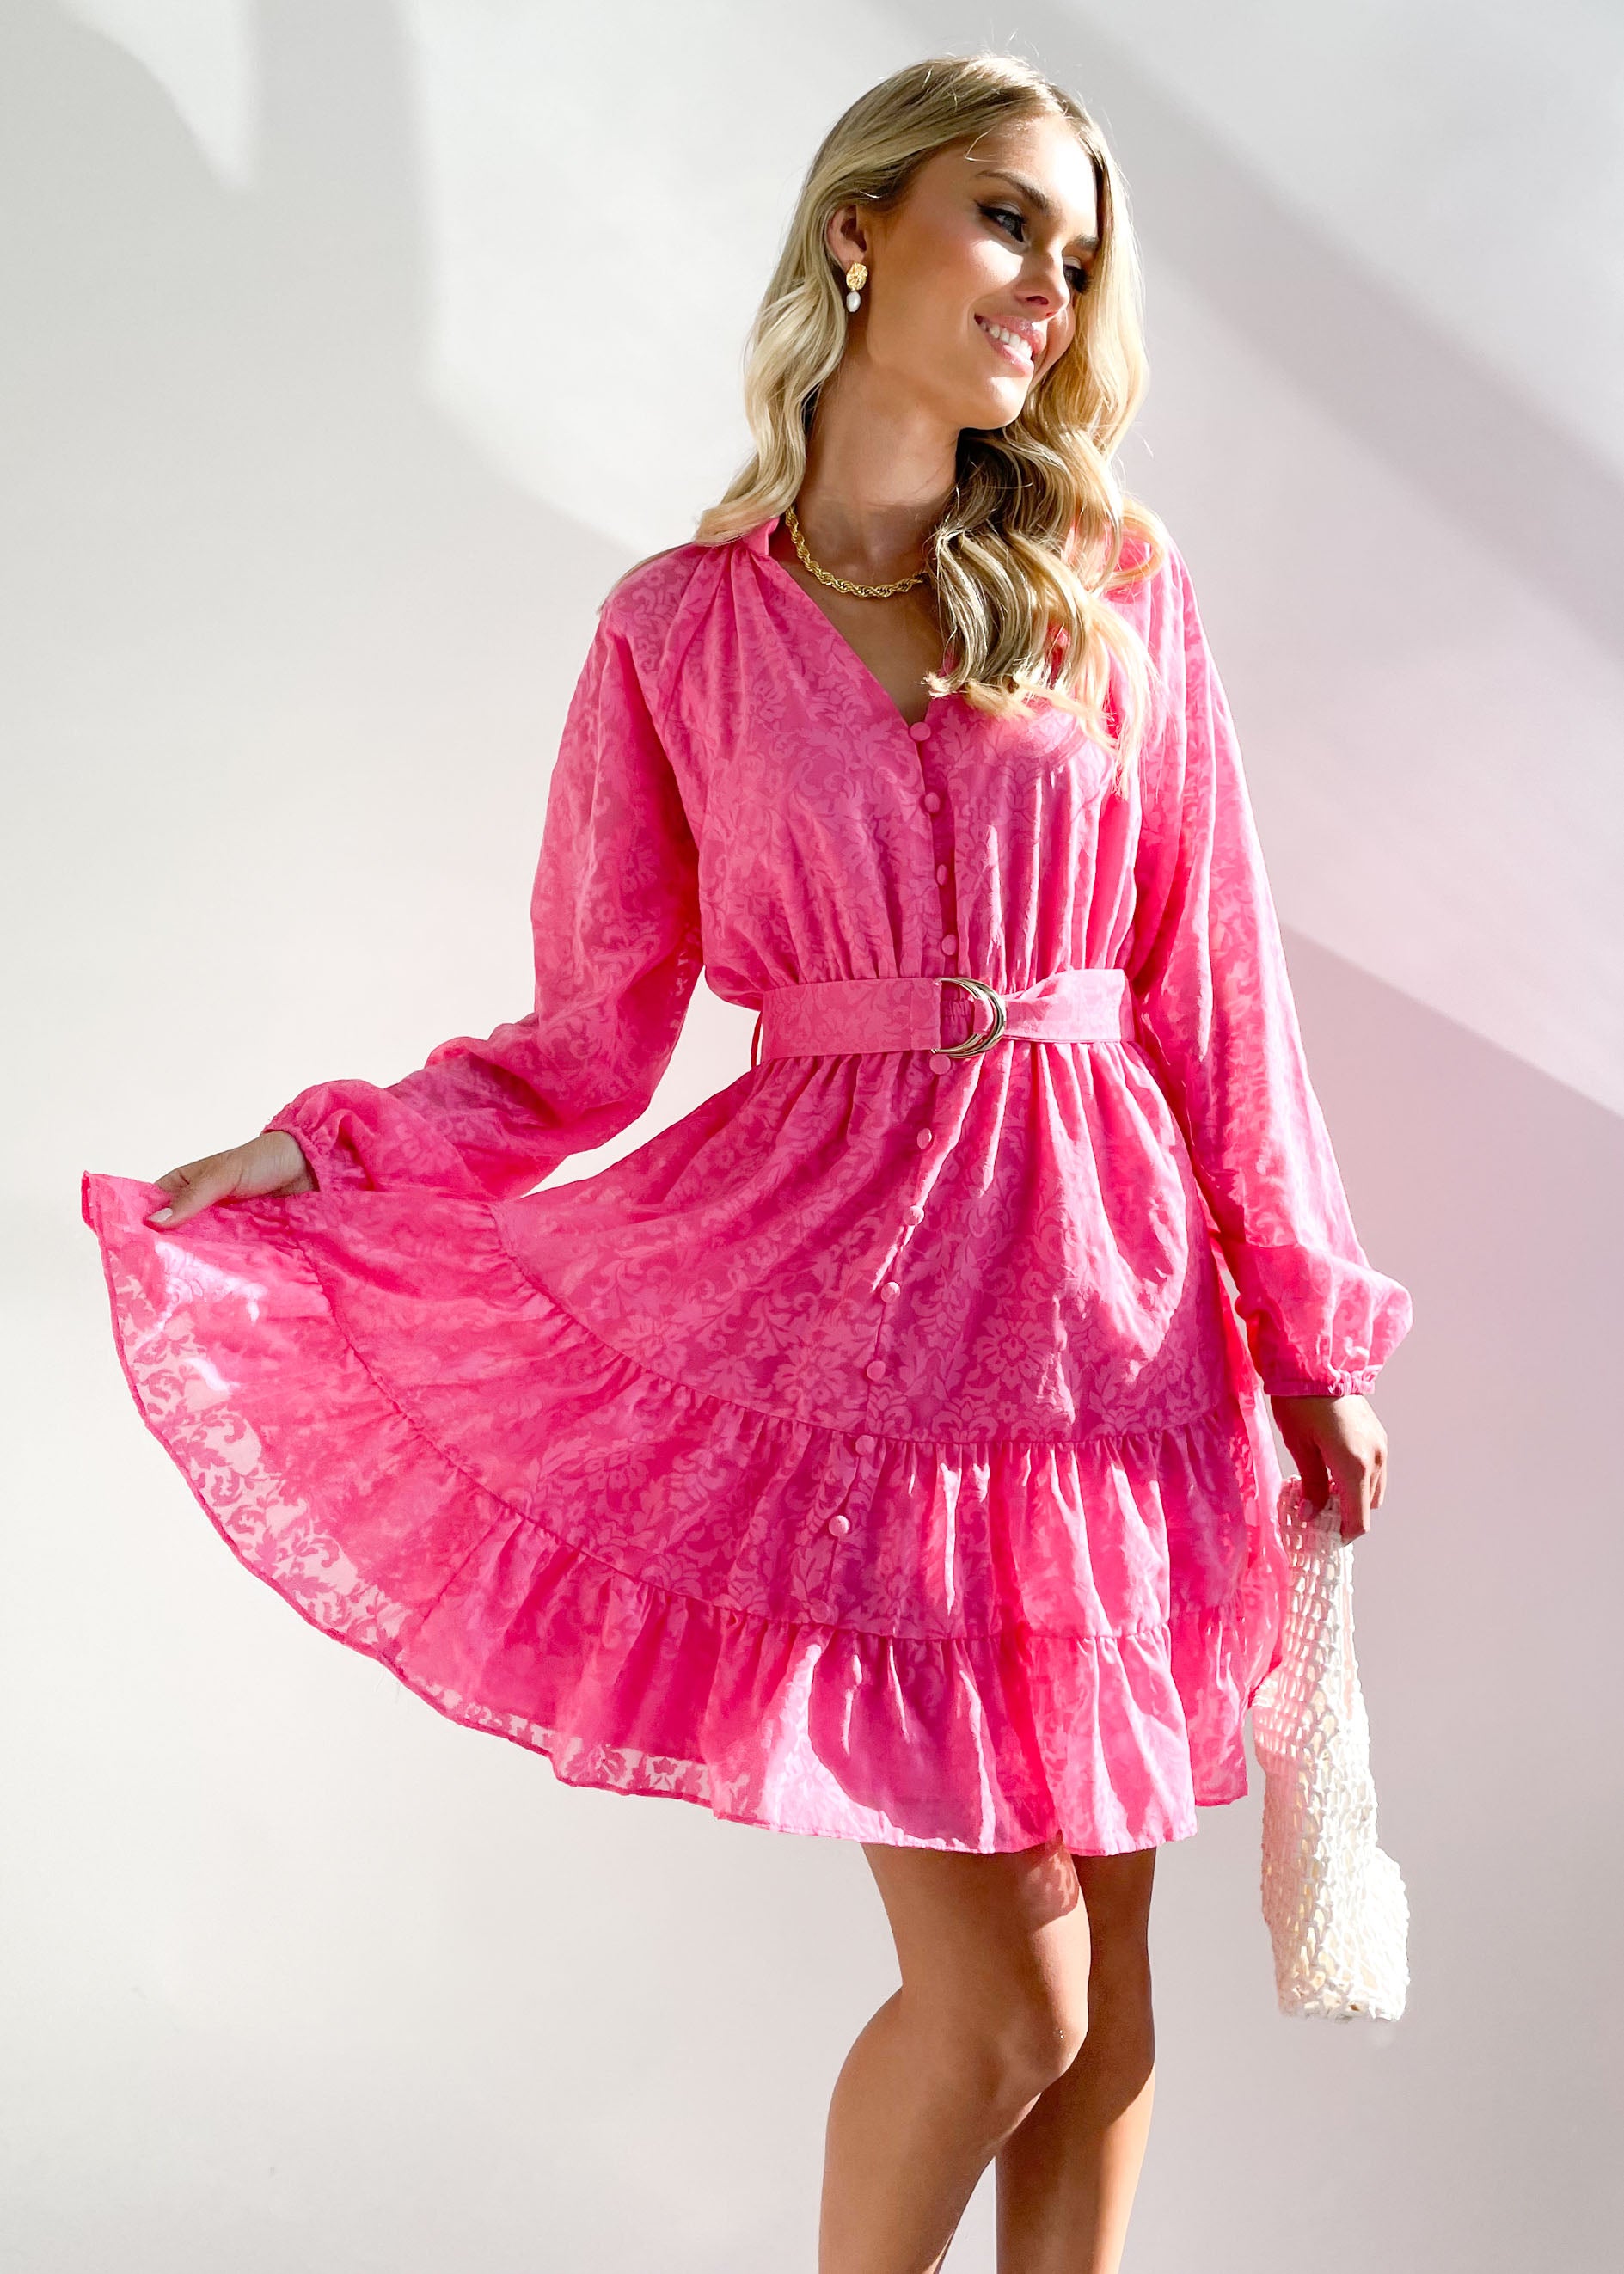 Julliana Dress - Hot Pink